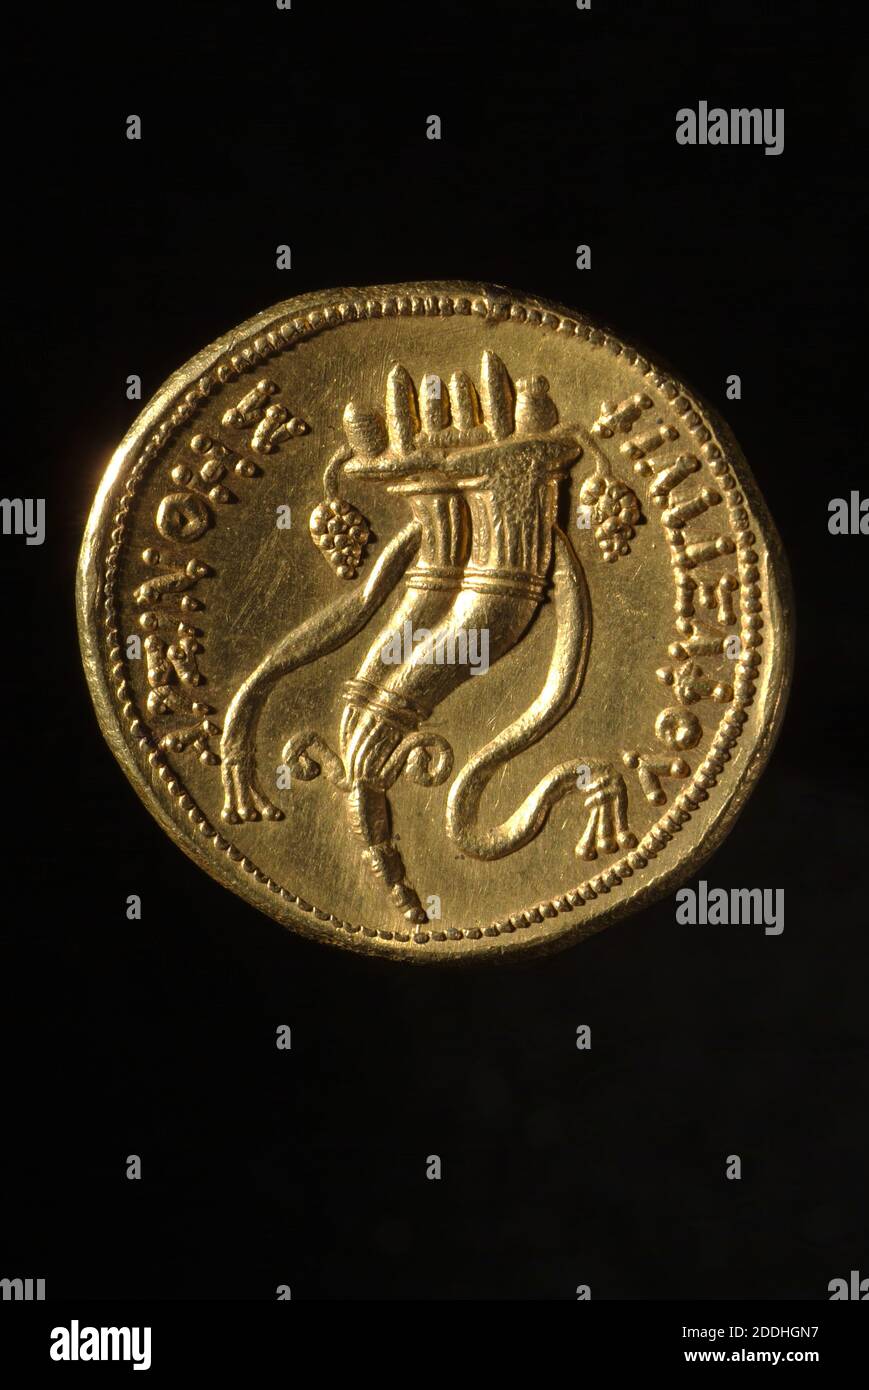 Vue transversale Oktadrachm grec d'Arsinoe II, 240 BC pièce d'or avec corne d'abondance, un symbole de prospérité, métaux précieux, or, pièces anciennes et médiévales, Numismatique, Cornucopia, Grèce antique, argent Banque D'Images